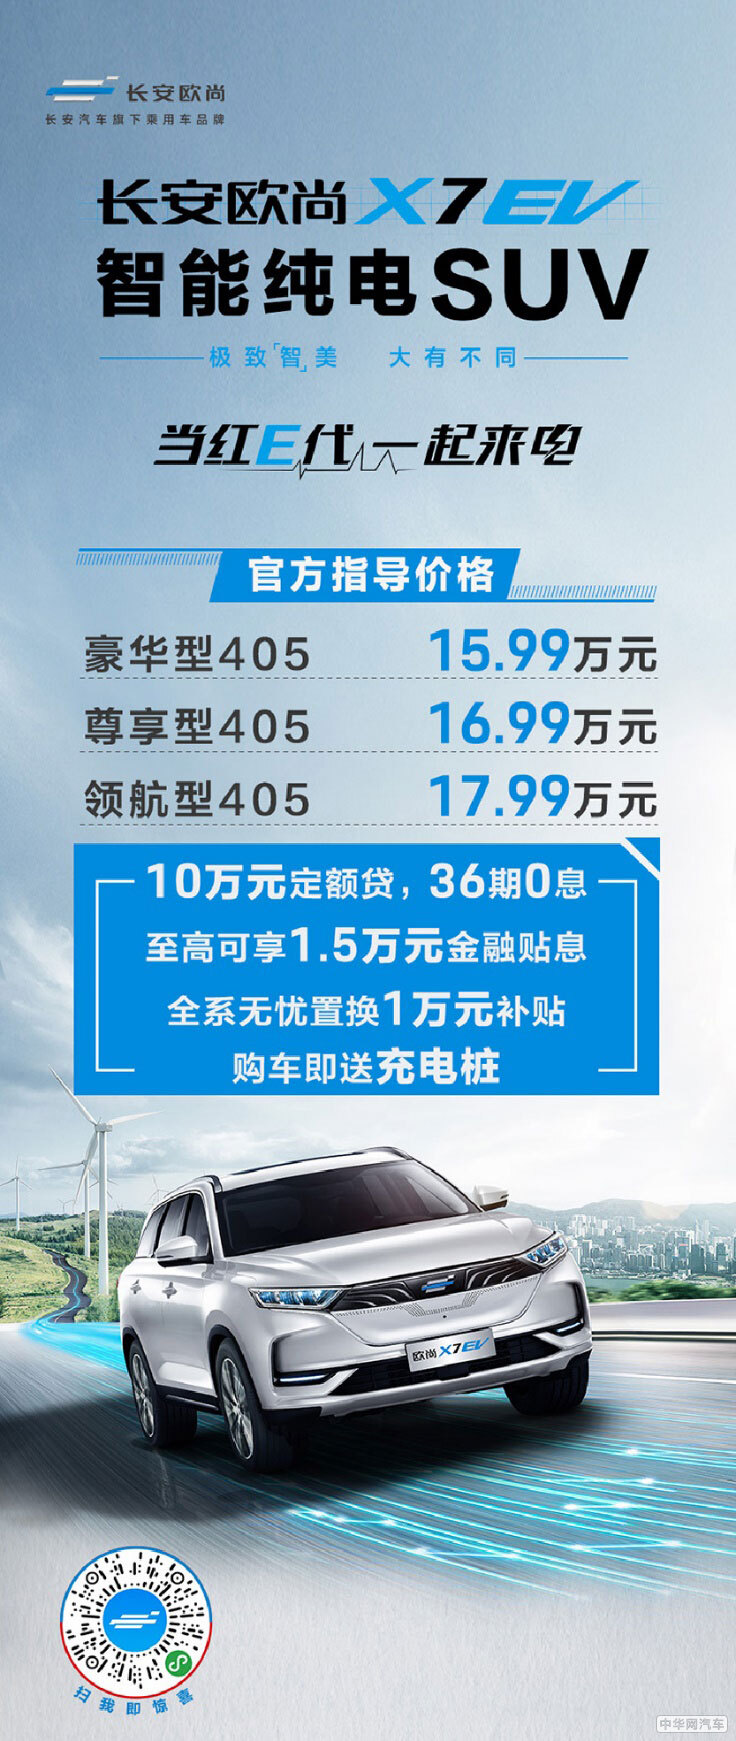 15.99万起 长安欧尚X7 EV开启电动车刷脸时代